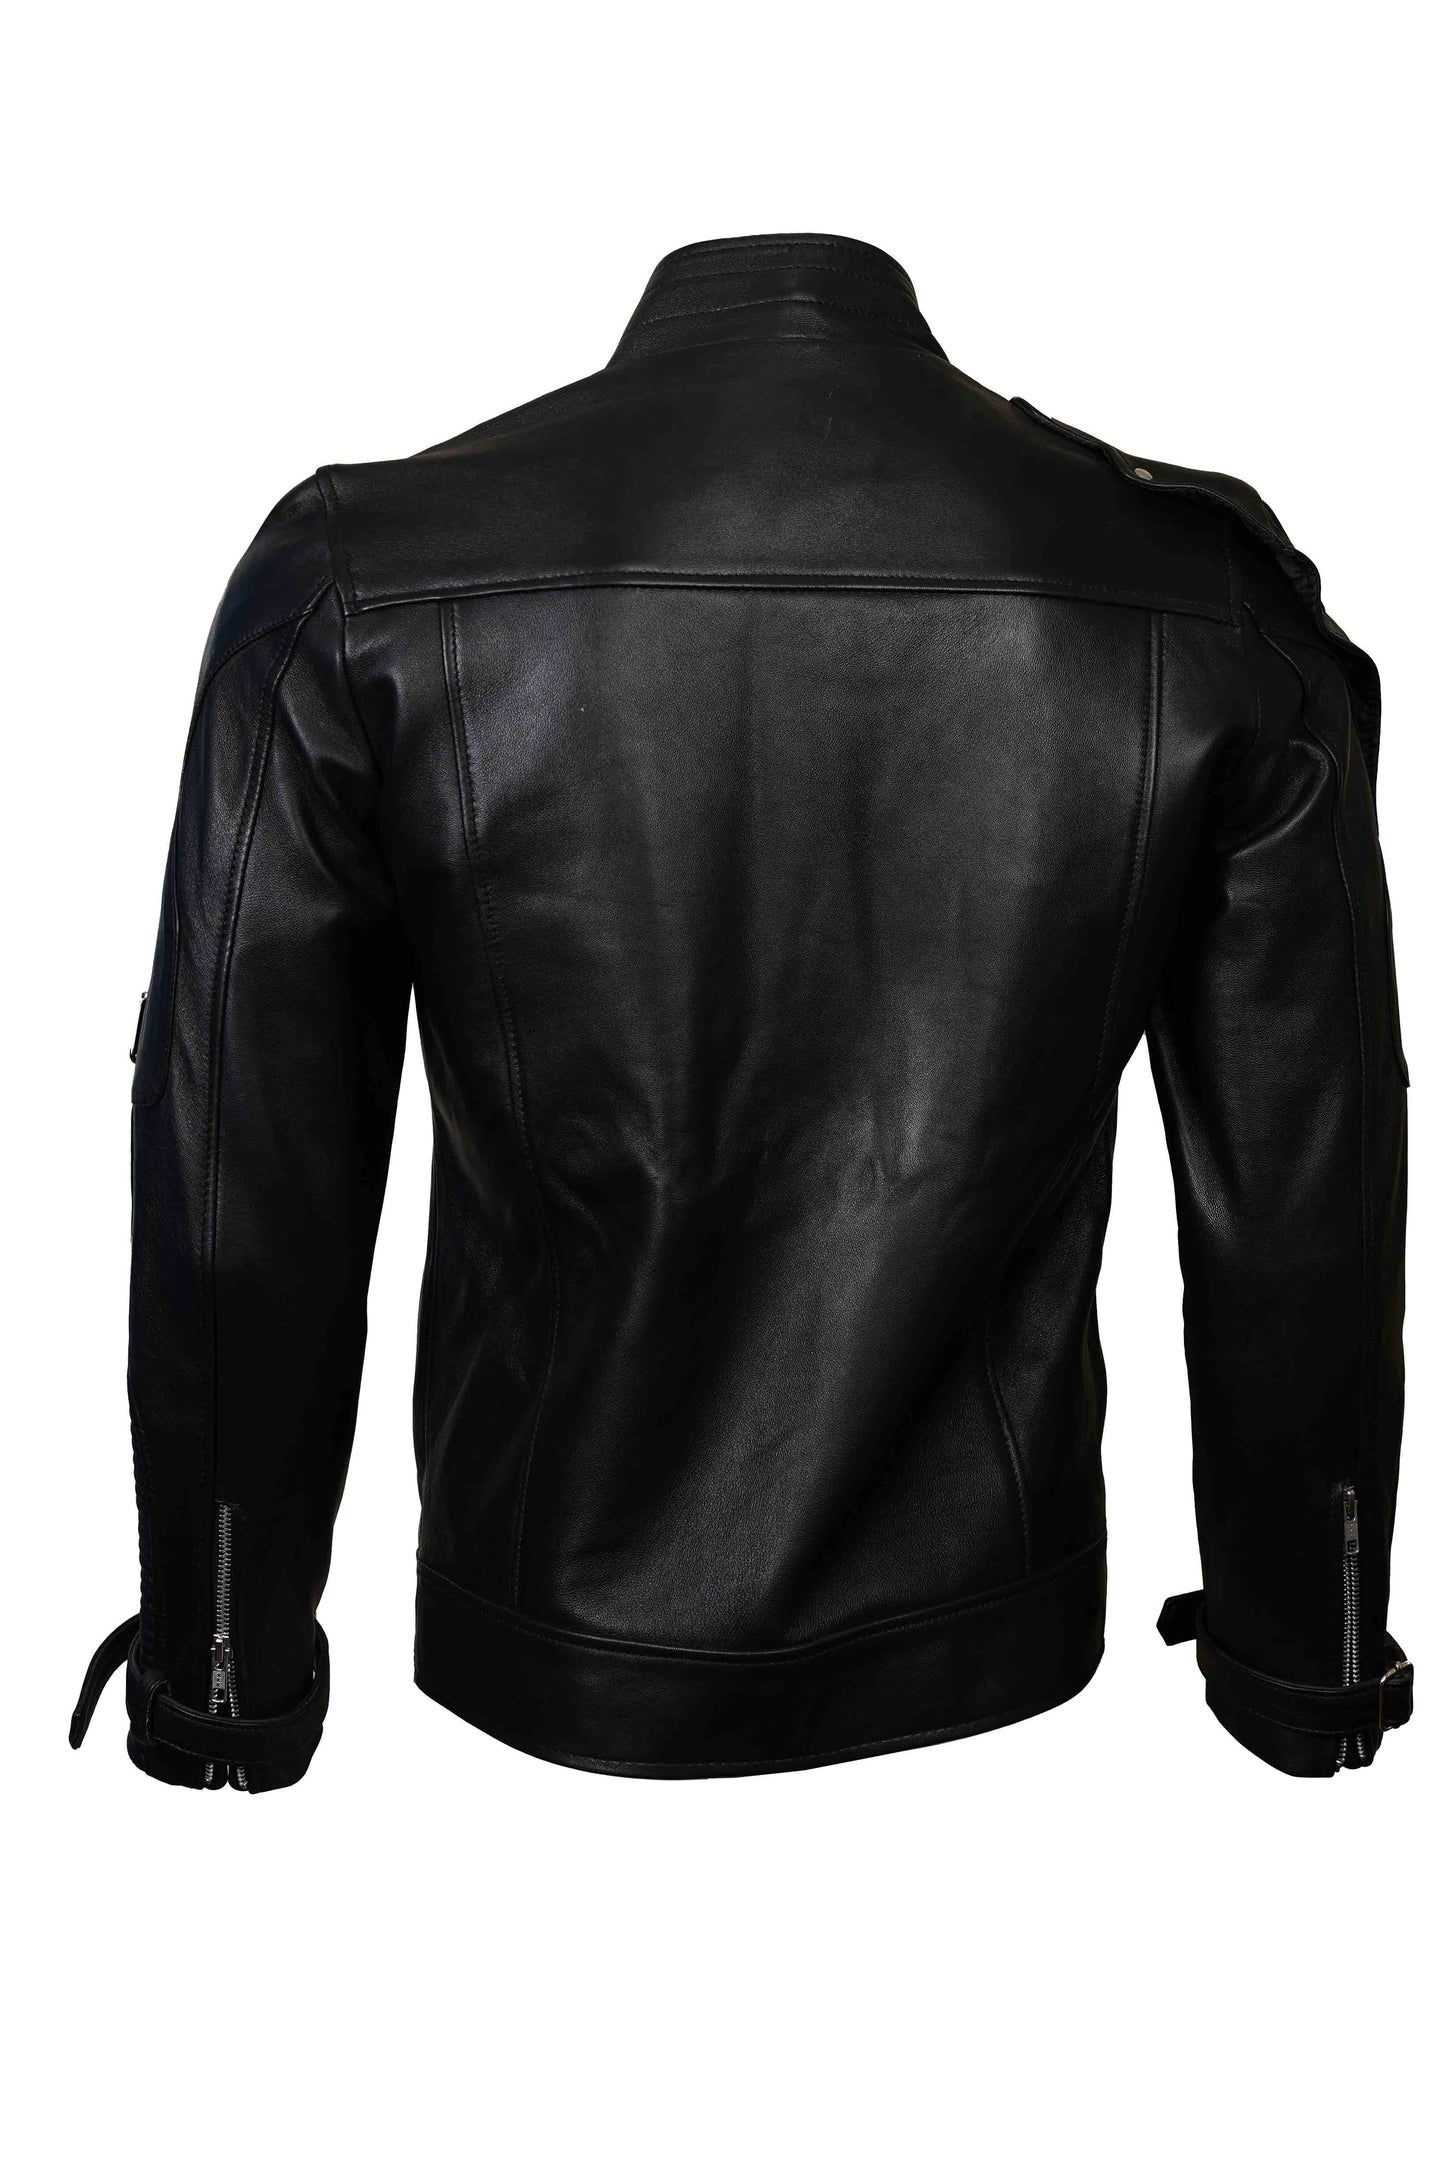 Buy Best Rider Black Fashion Lather Jacket